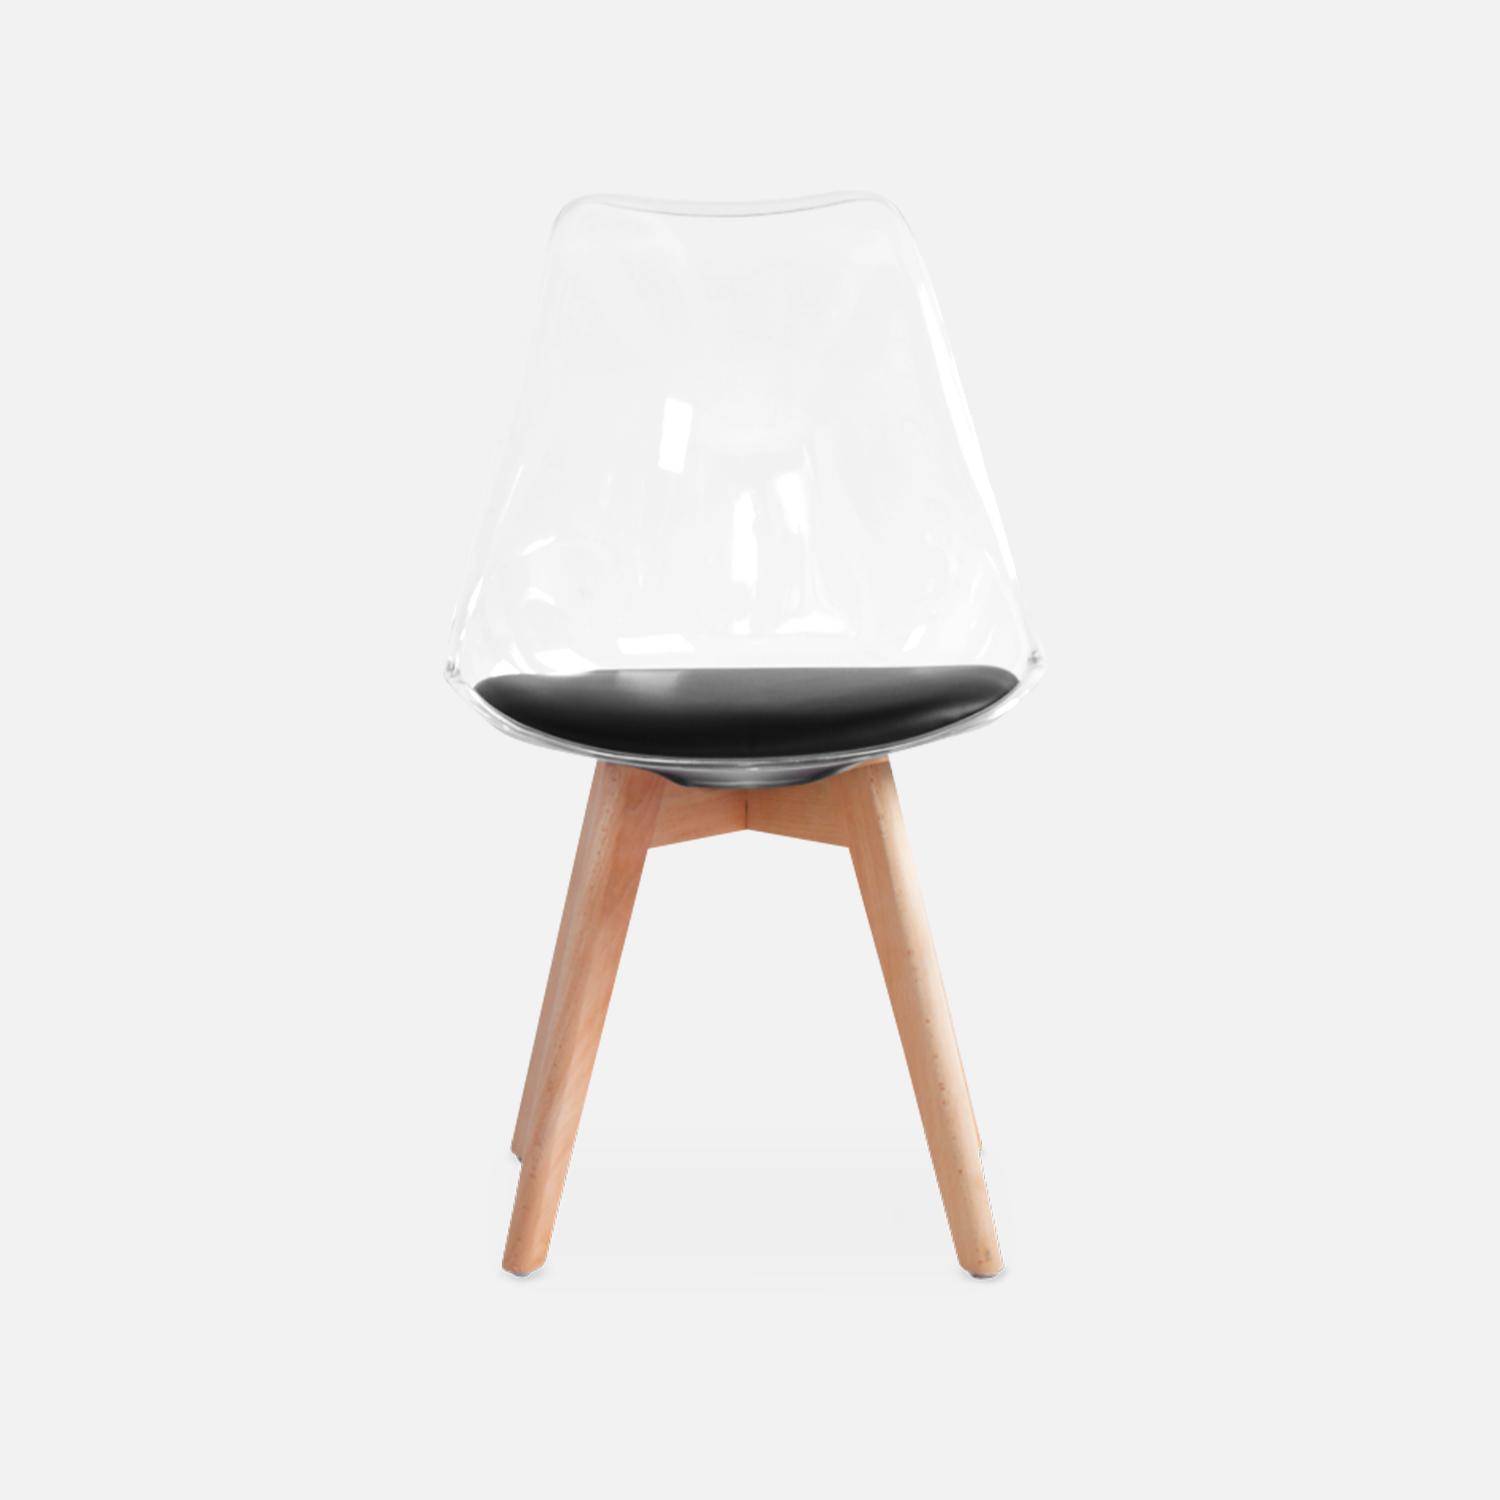 4er Set Stühle im skandinavischen Stil - Lagertha - Holzbeine, Ein Sitz, schwarzes Kissen, transparente Sitzschale Photo5